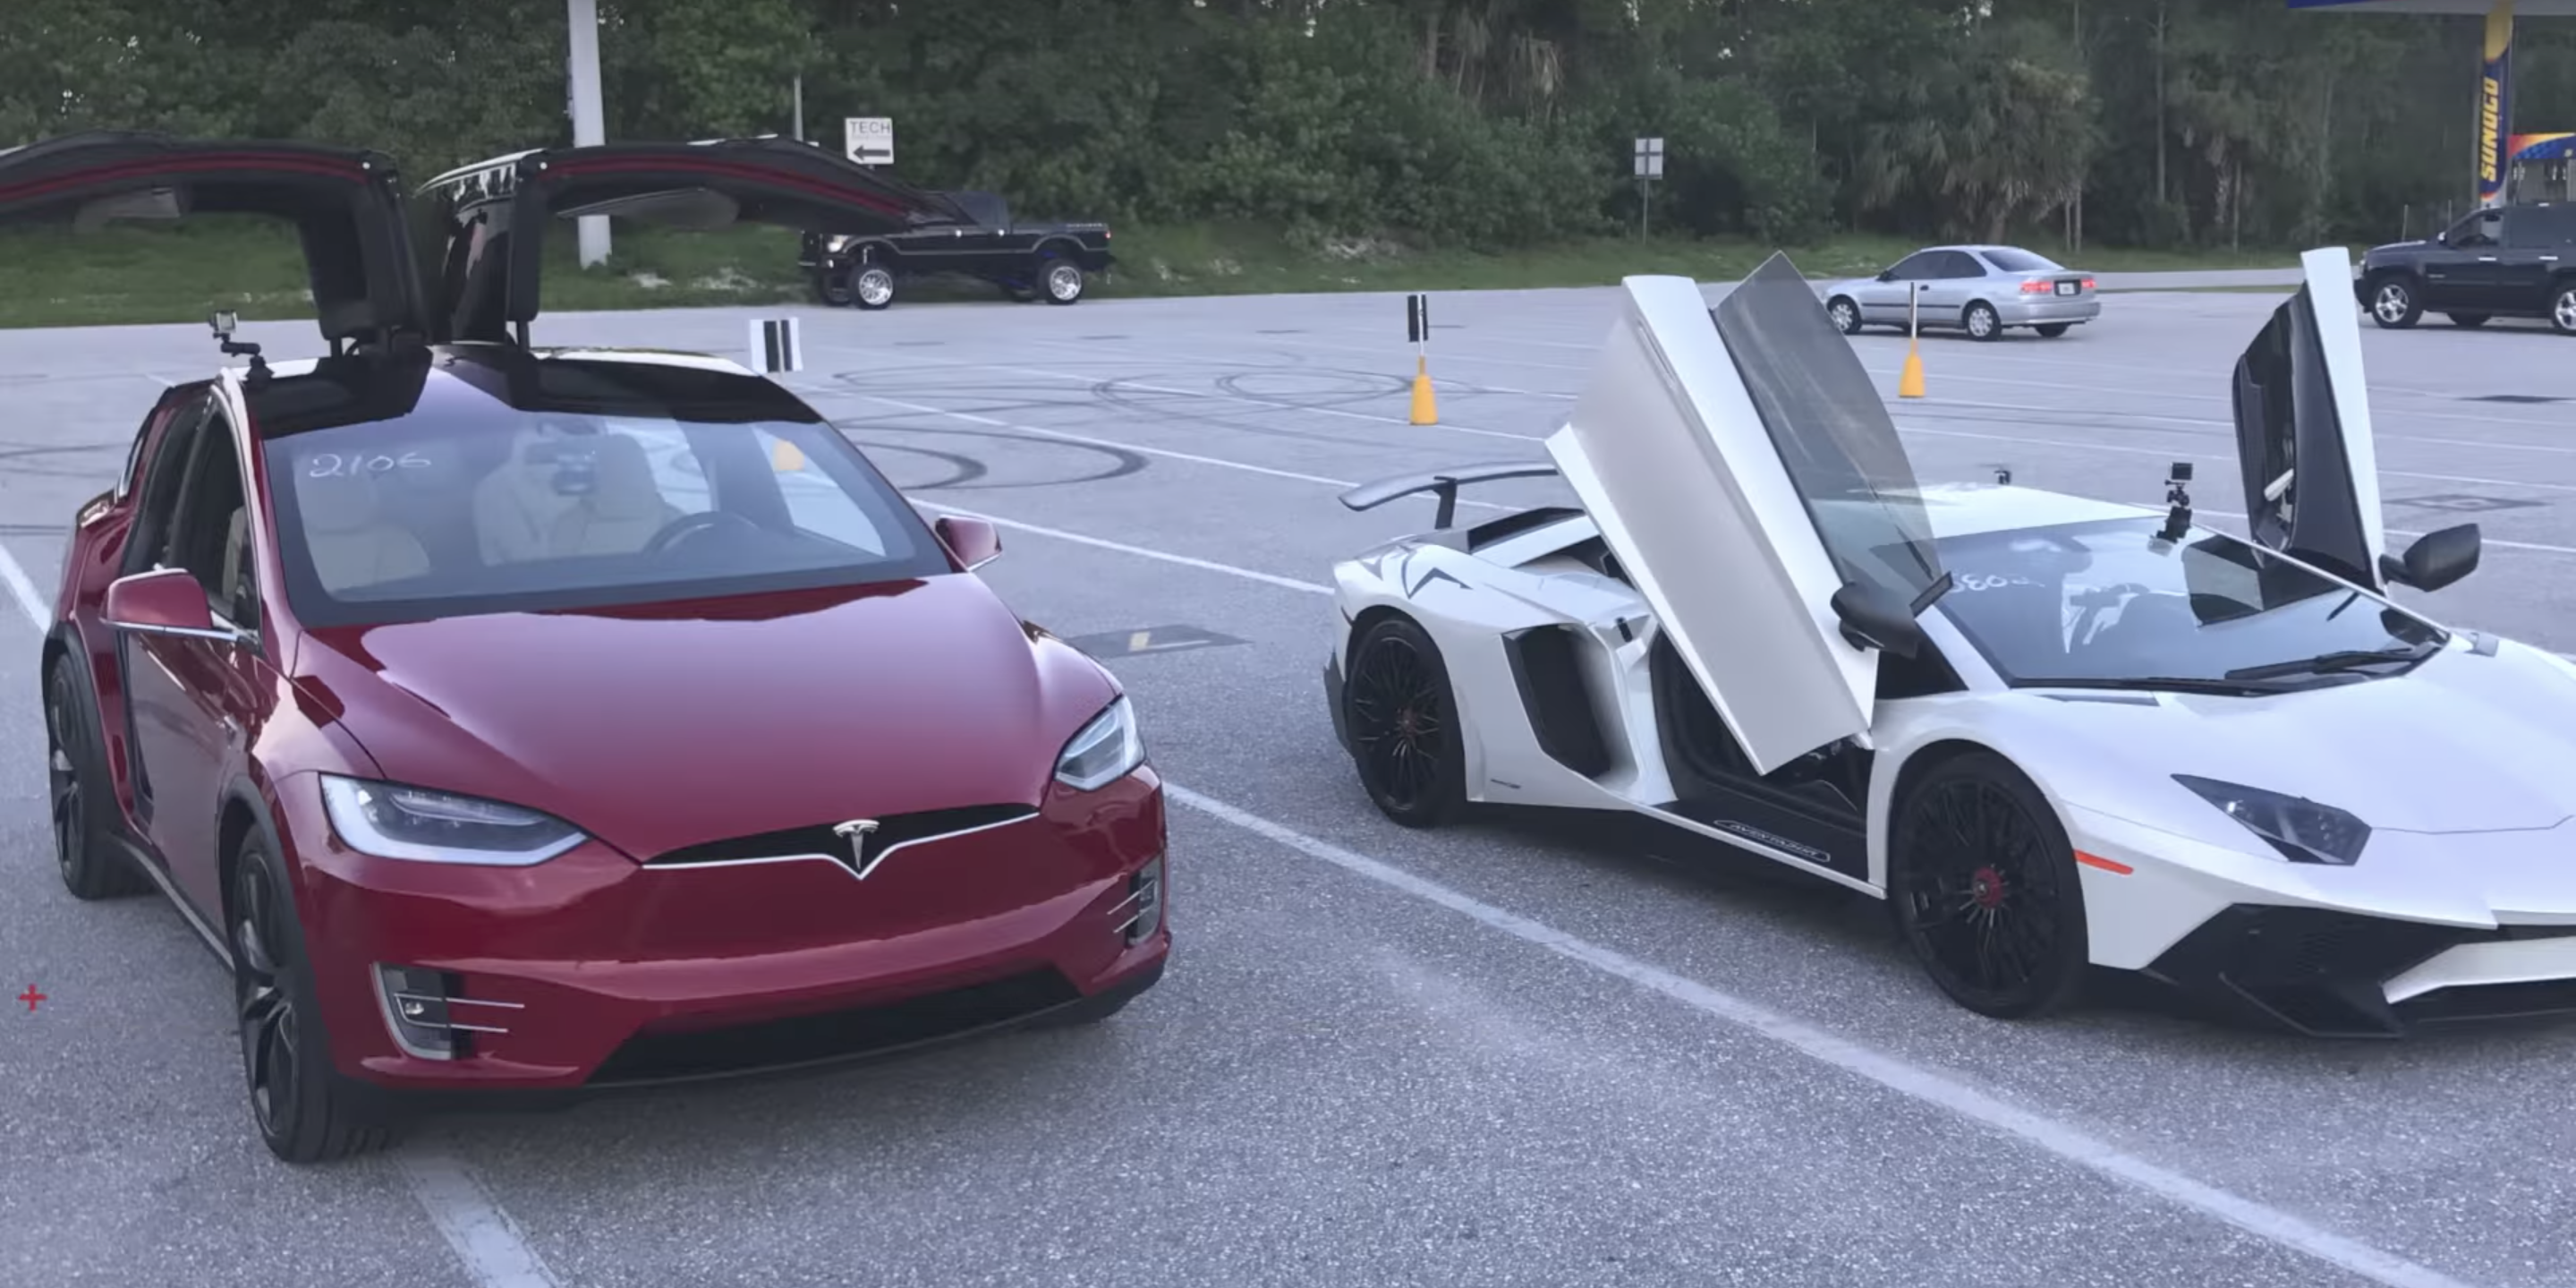 Model X all-electric SUV beats Lamborghini Aventador with record 1/4 mile in 11.4 secs